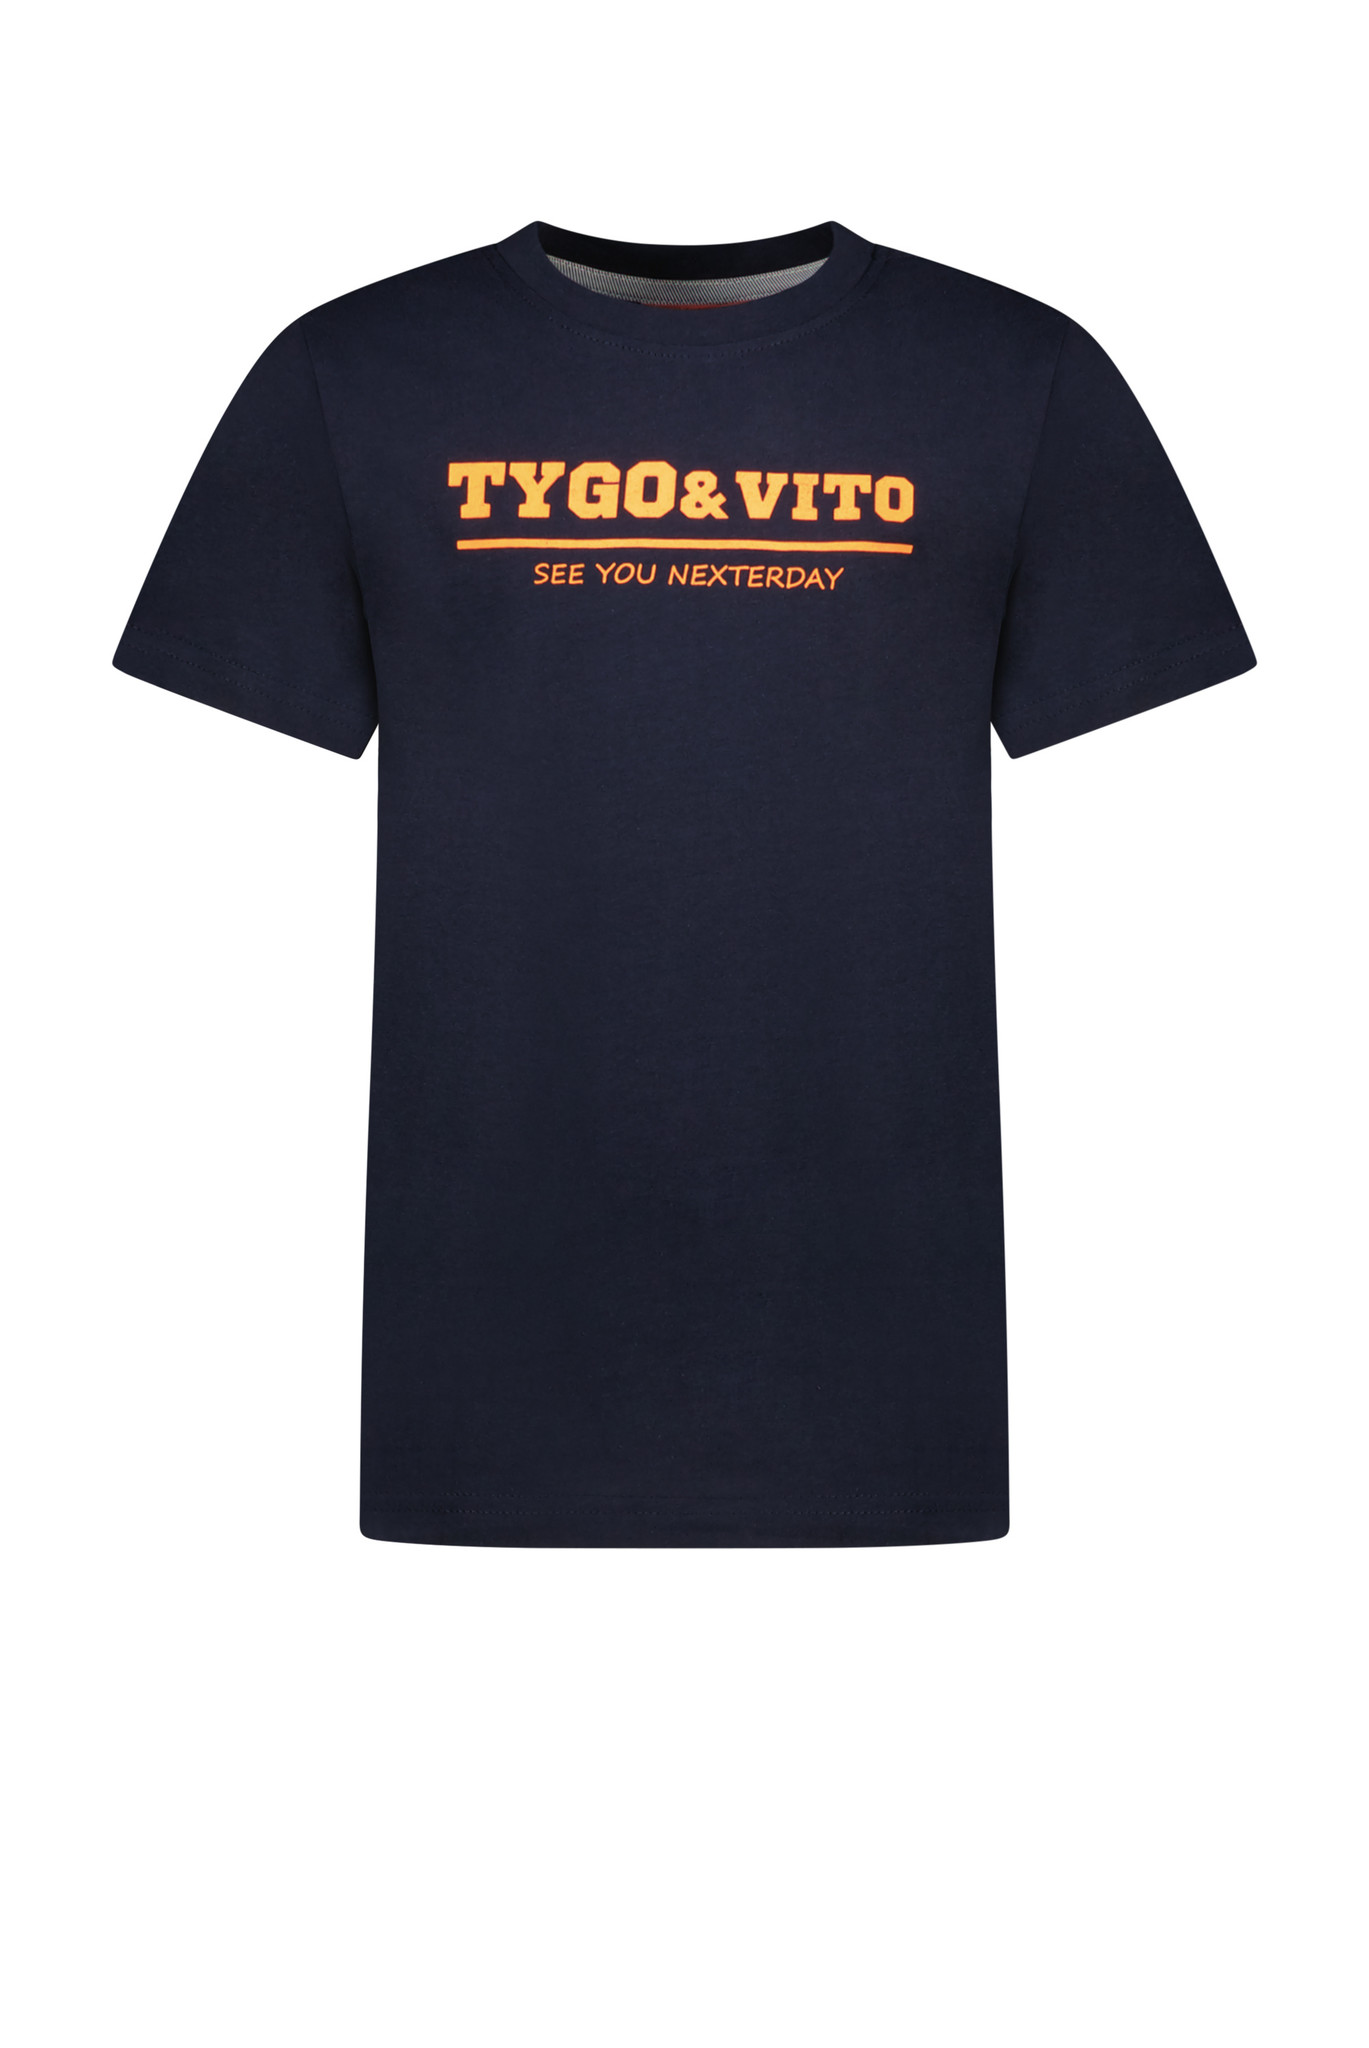 TYGO & vito X302-6420 Jongens T-shirt - Maat 110/116